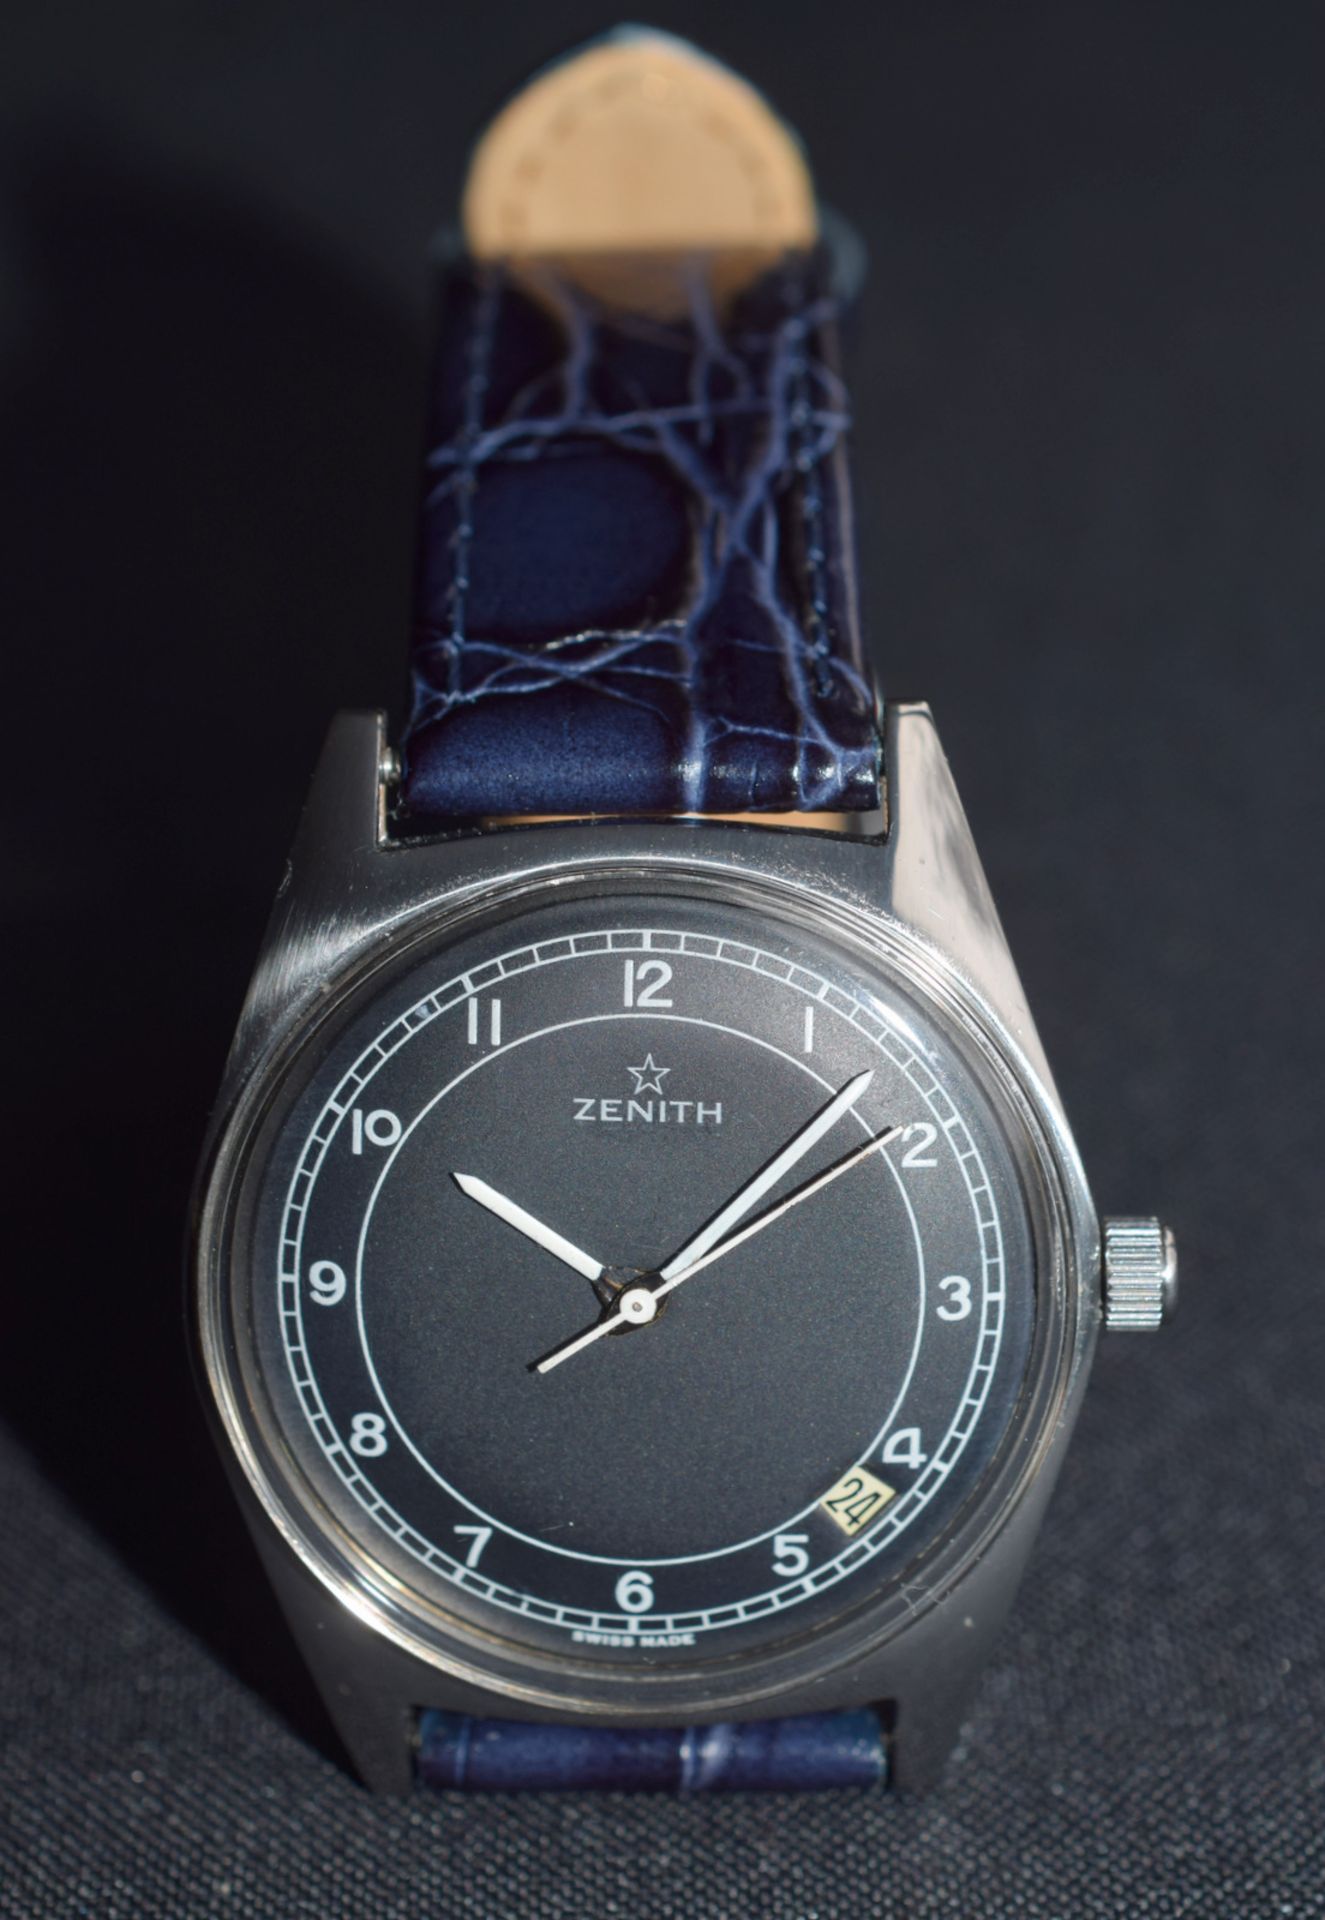 Zenith Black Dial Gentleman's Wristwatch - Image 5 of 5